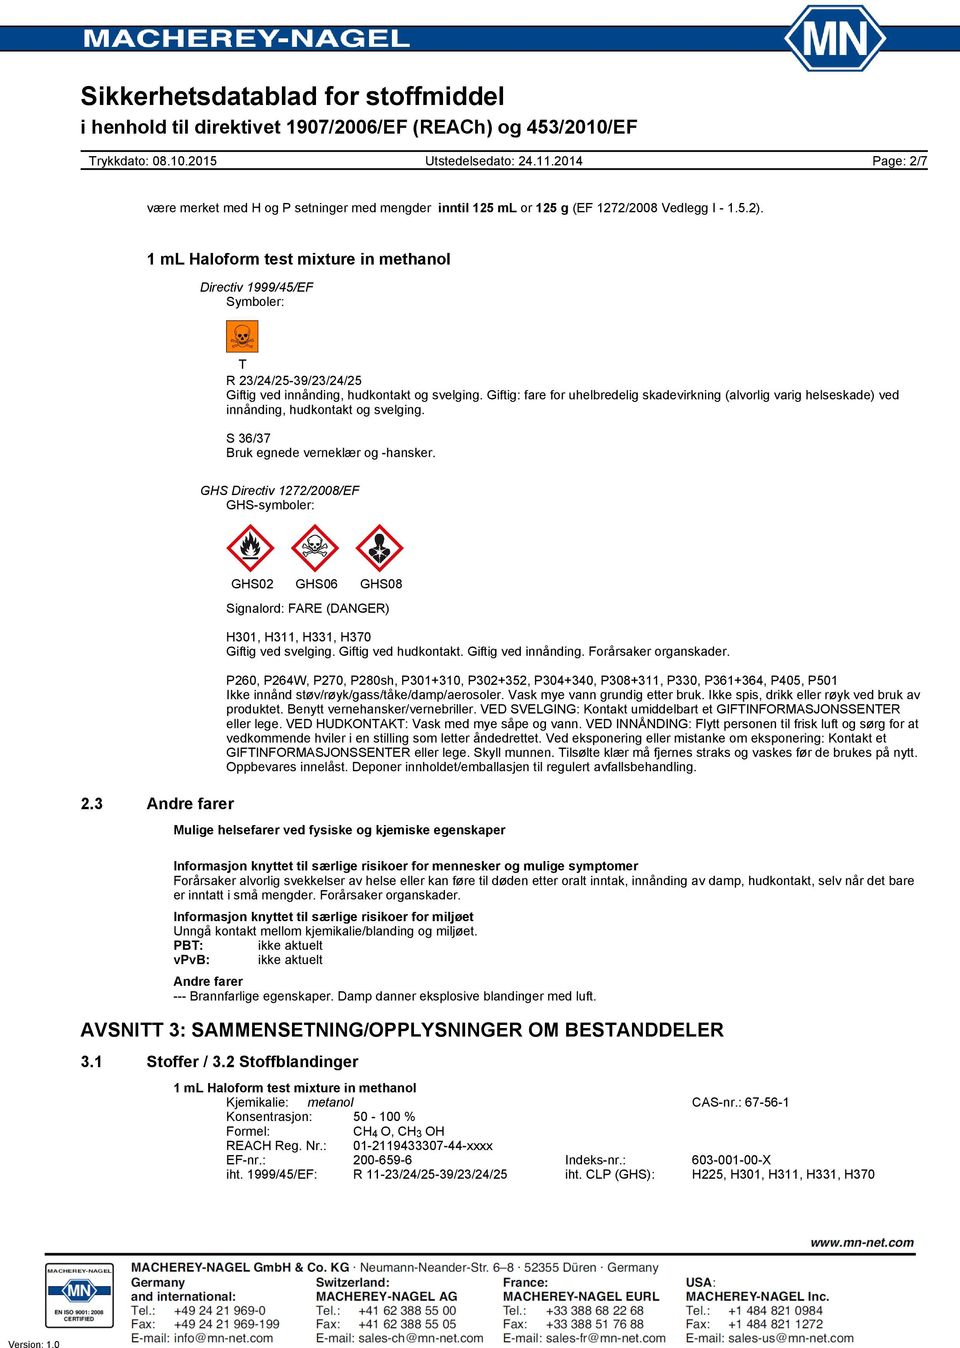 Giftig: fare for uhelbredelig skadevirkning (alvorlig varig helseskade) ved innånding, hudkontakt og svelging. S 36/37 Bruk egnede verneklær og -hansker. GHS Directiv 1272/2008/EF GHS-symboler: 2.